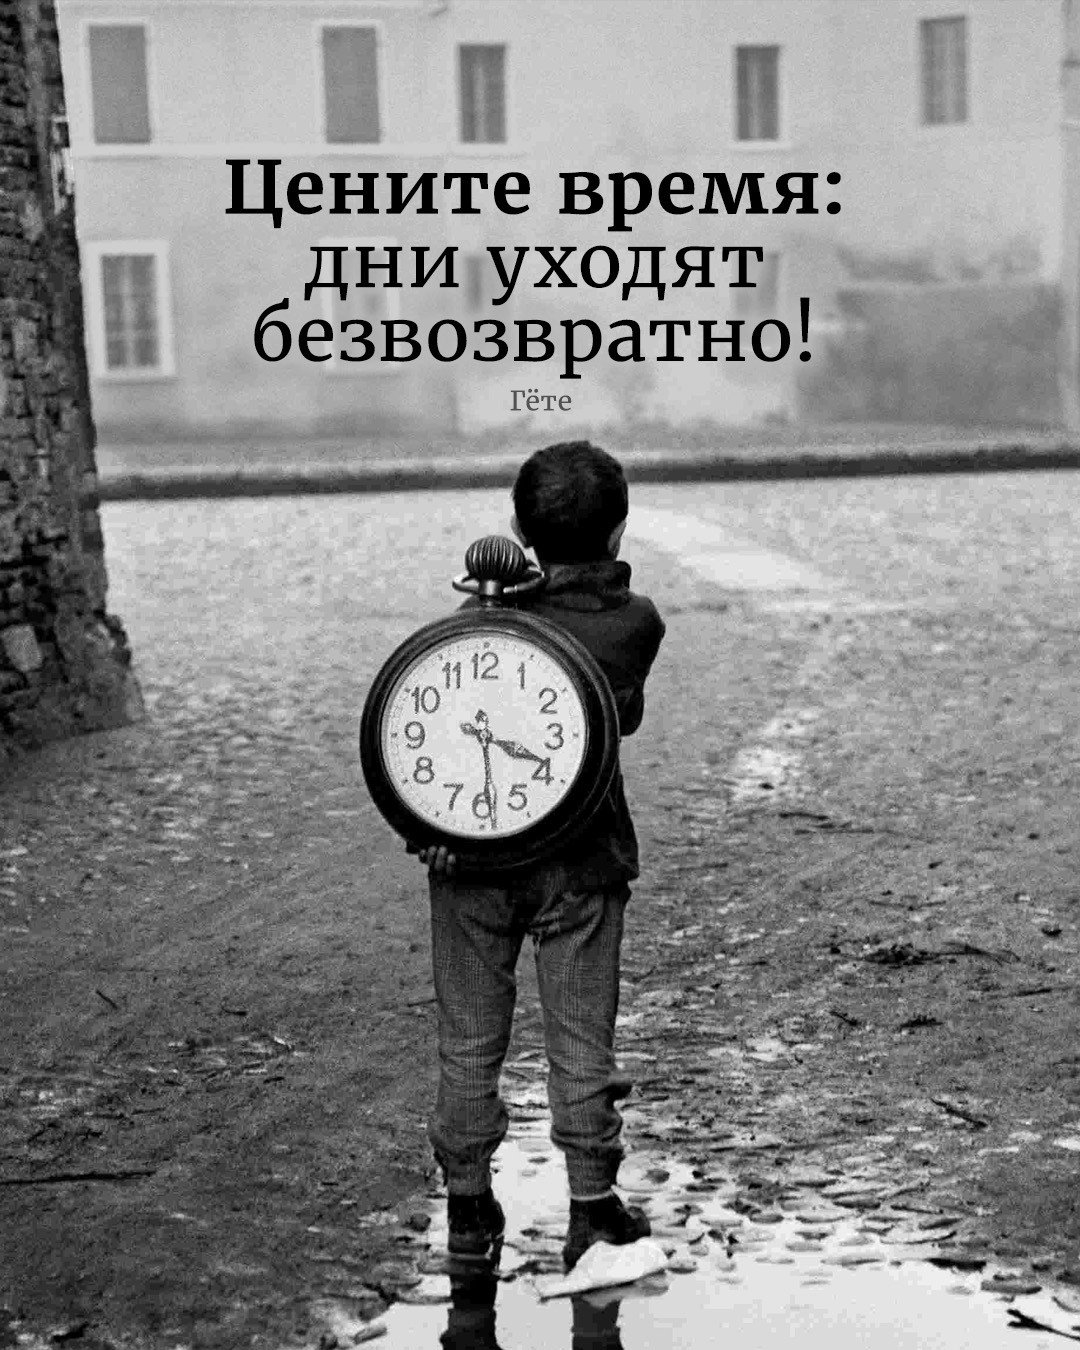 Вернуть потерянное время. Цените время. Дорожите временем. А время уходит. Цитаты про время.